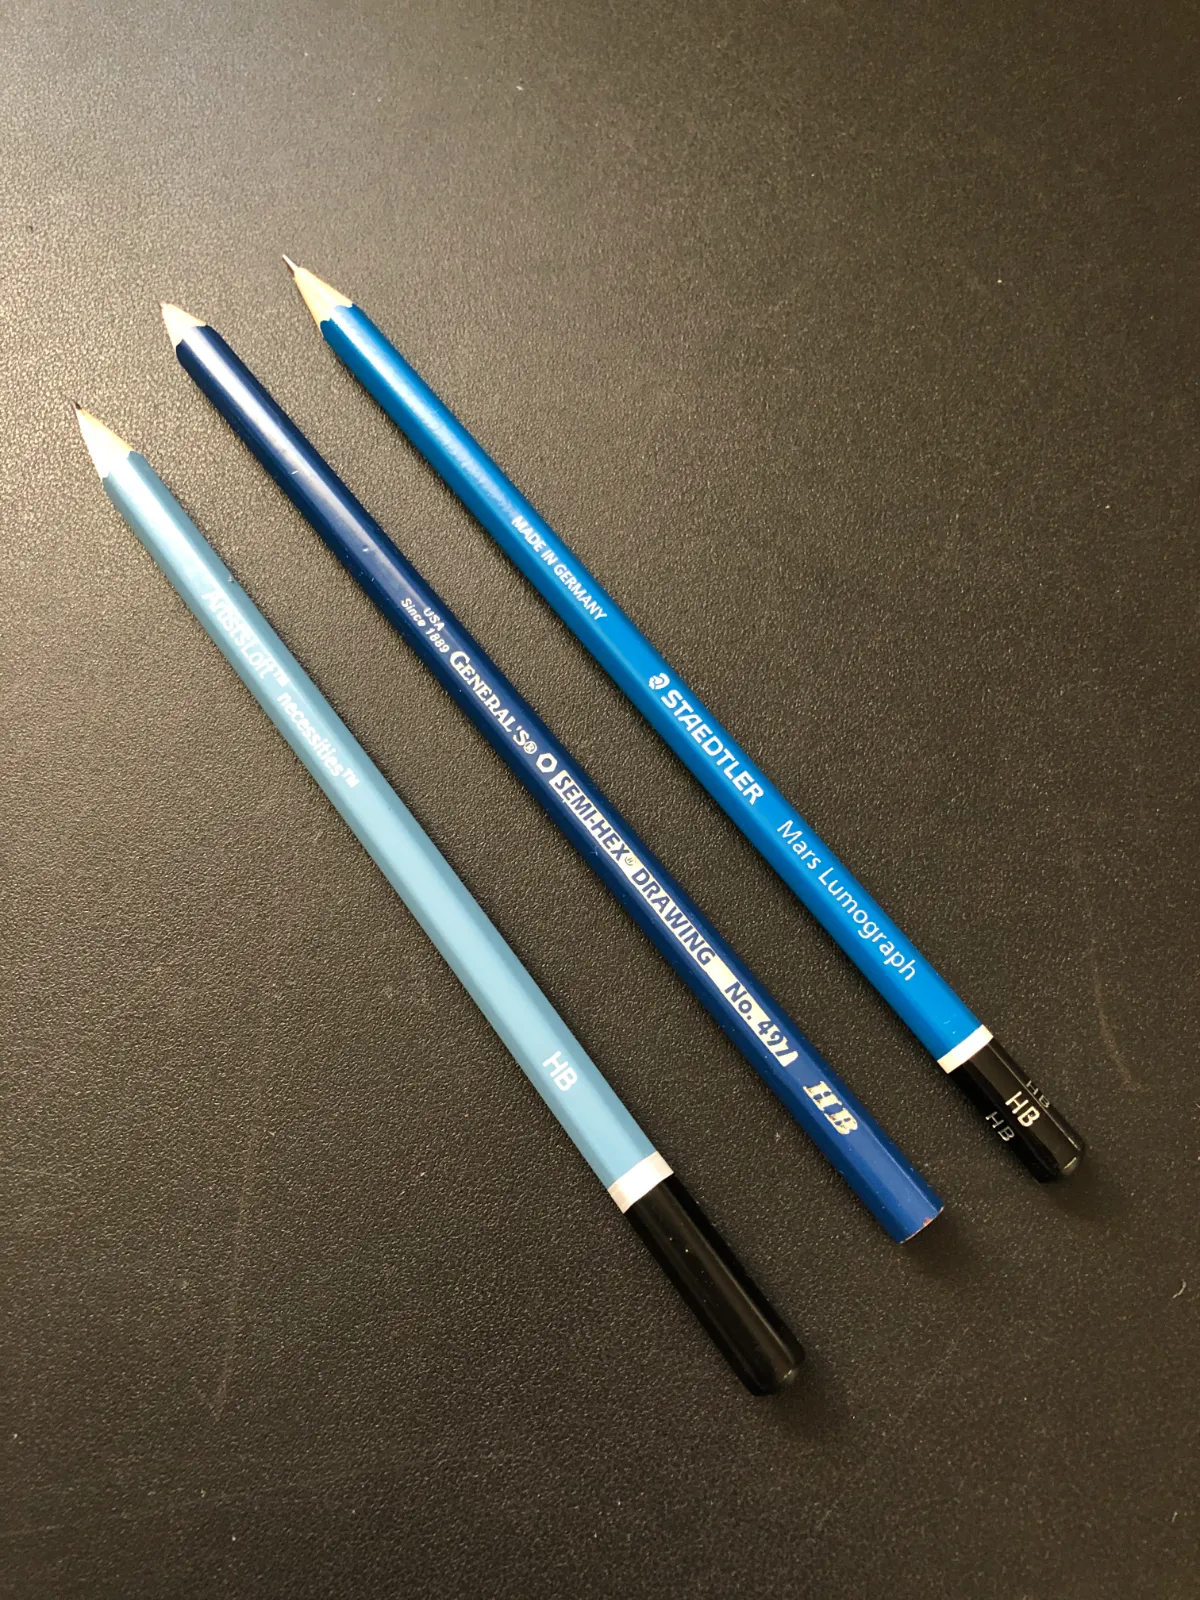 hb pencils